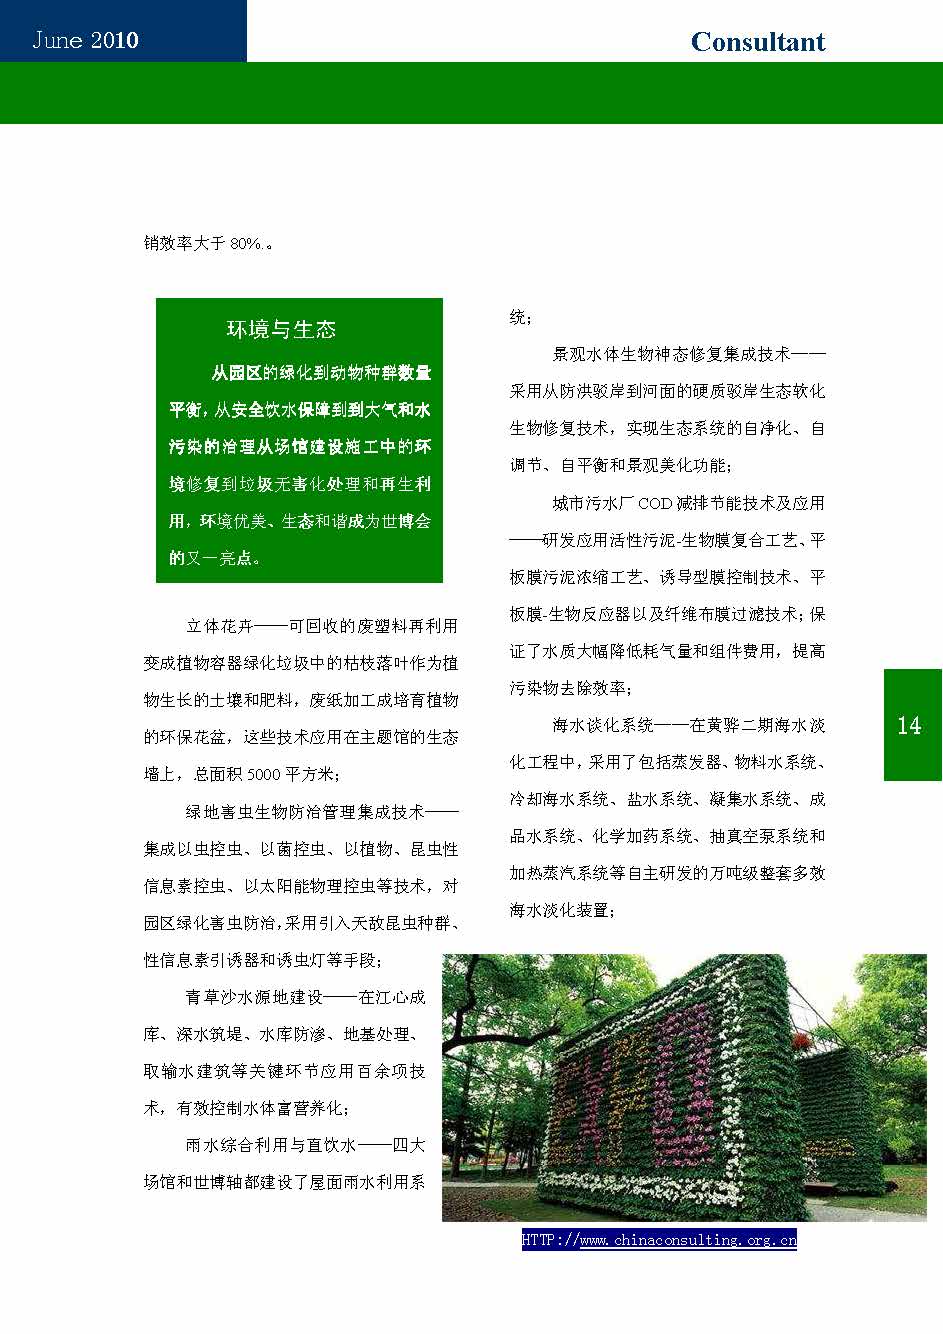 10中国科技咨询协会第十期会刊_页面_16.jpg